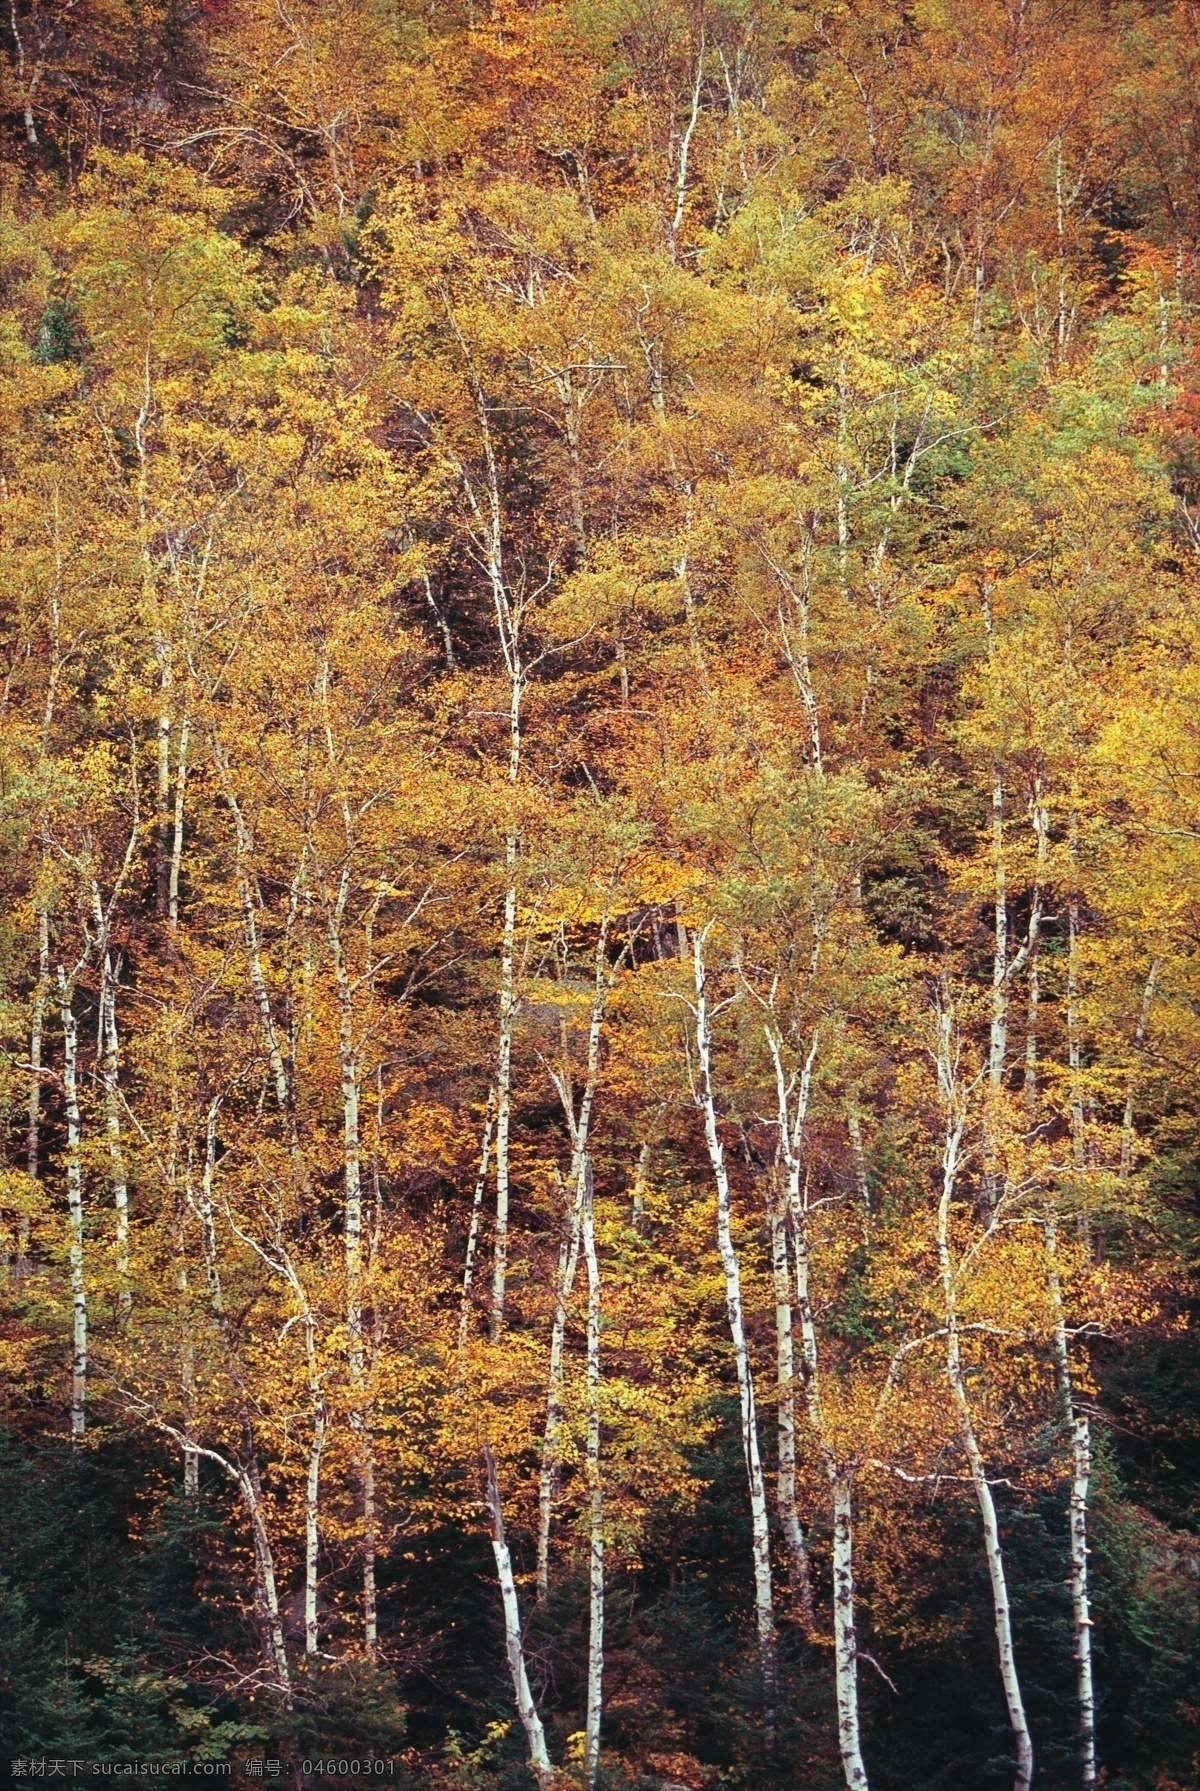 秋天 树林 风景 树木风景 枫树 黄叶 枫叶 美景 美丽风景 摄影图 高清图片 花草树木 生物世界